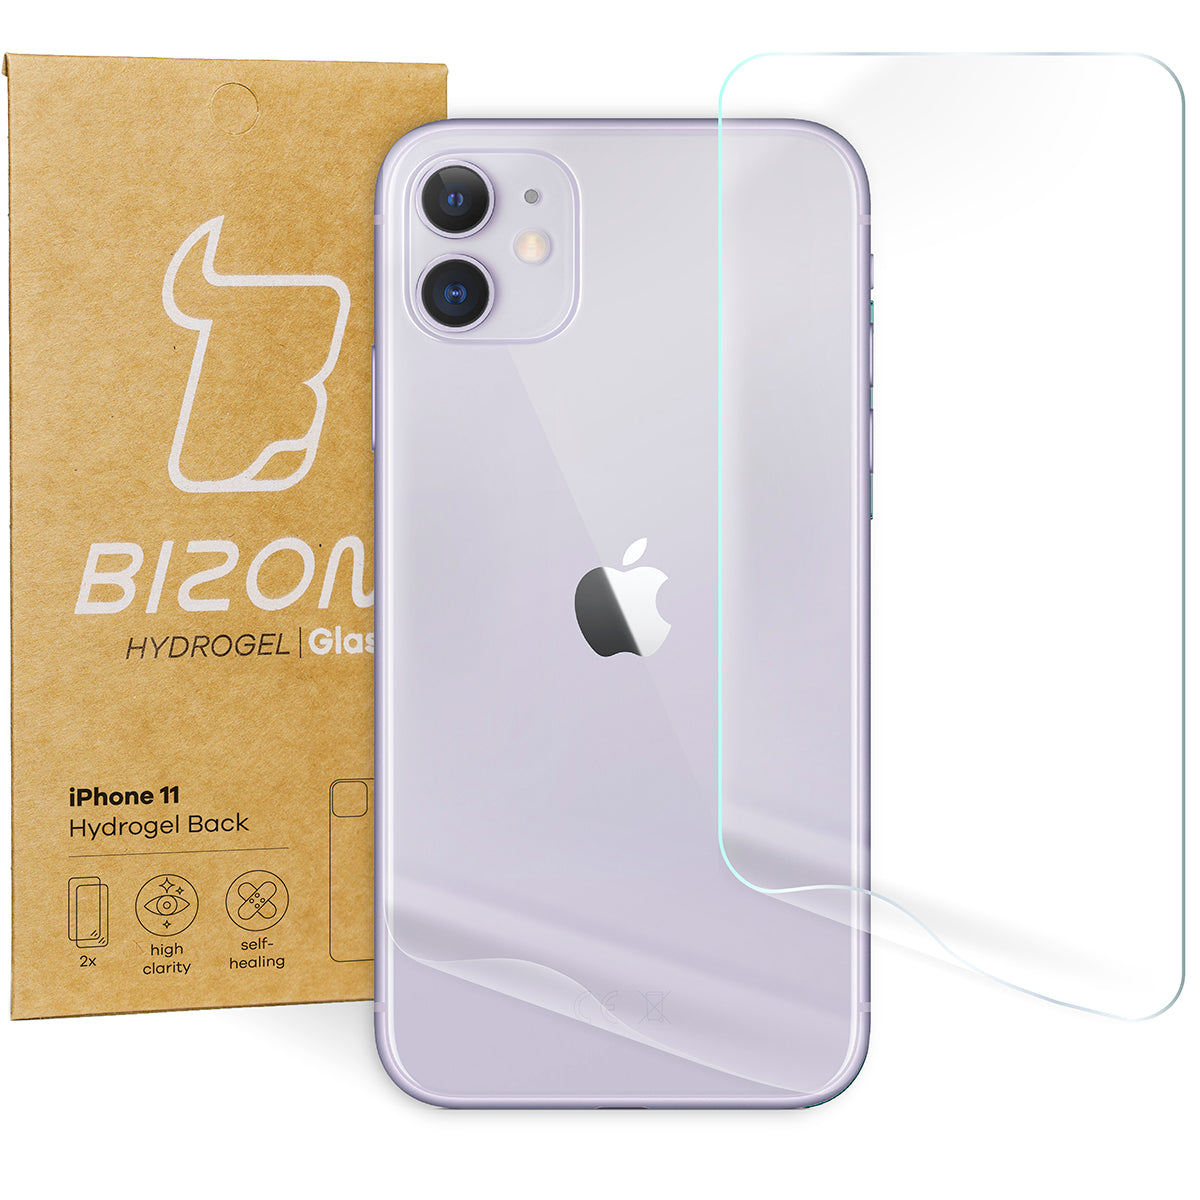 Hydrogel Folie für die Rückseite Bizon Glass, iPhone 11, 2 Stück